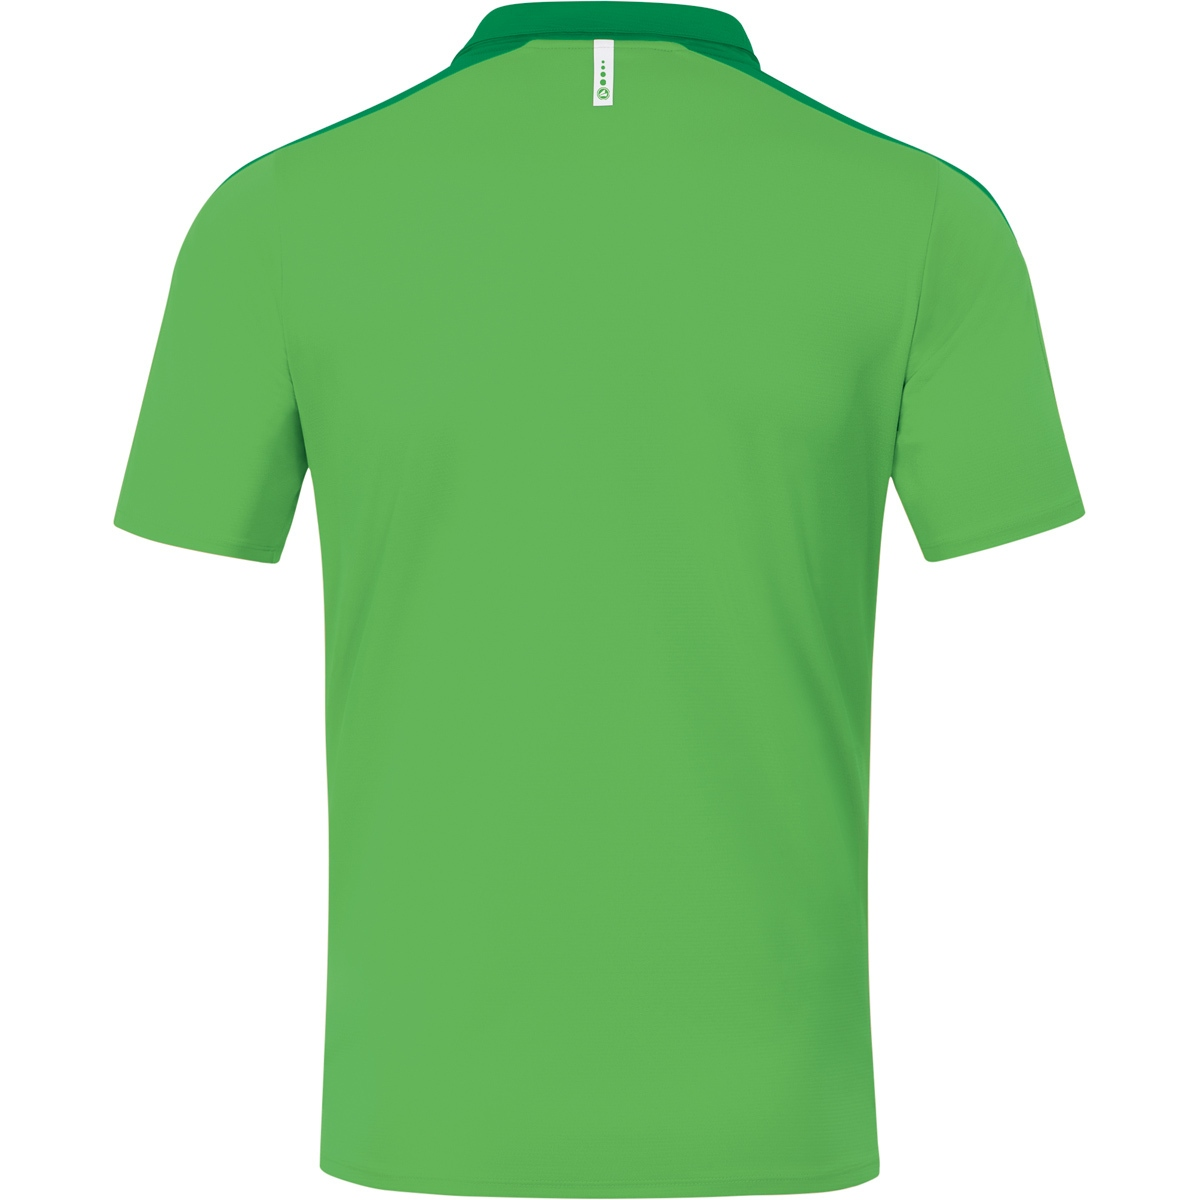 6320 Champ green/sportgrün, Gr. Polo Damen, soft JAKO 44, 2.0